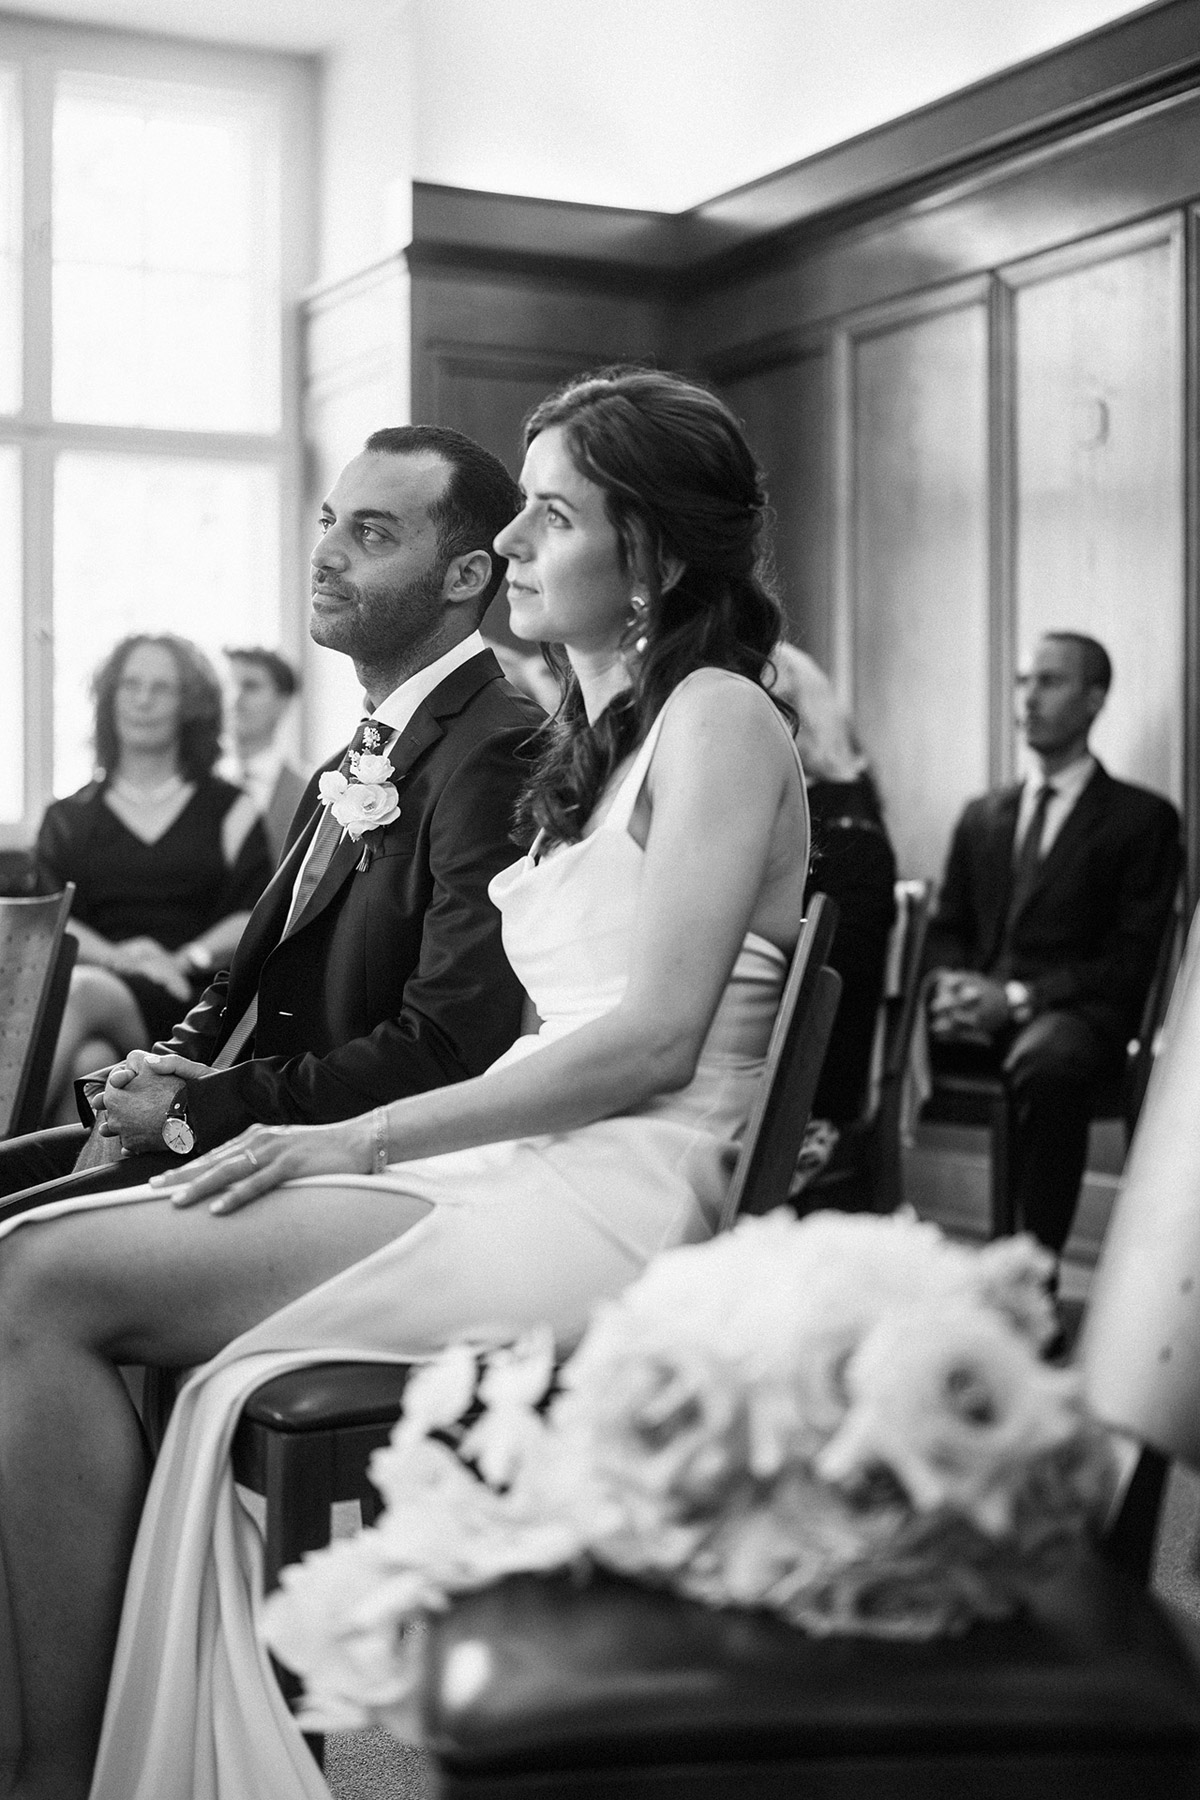 Hochzeitsfoto im Standesamt Treptow: Während der Trauung sitzt das Paar im Trauraum etwas weiter vorn als seine Gäste. © www.hochzeitslicht.de #hochzeitslicht